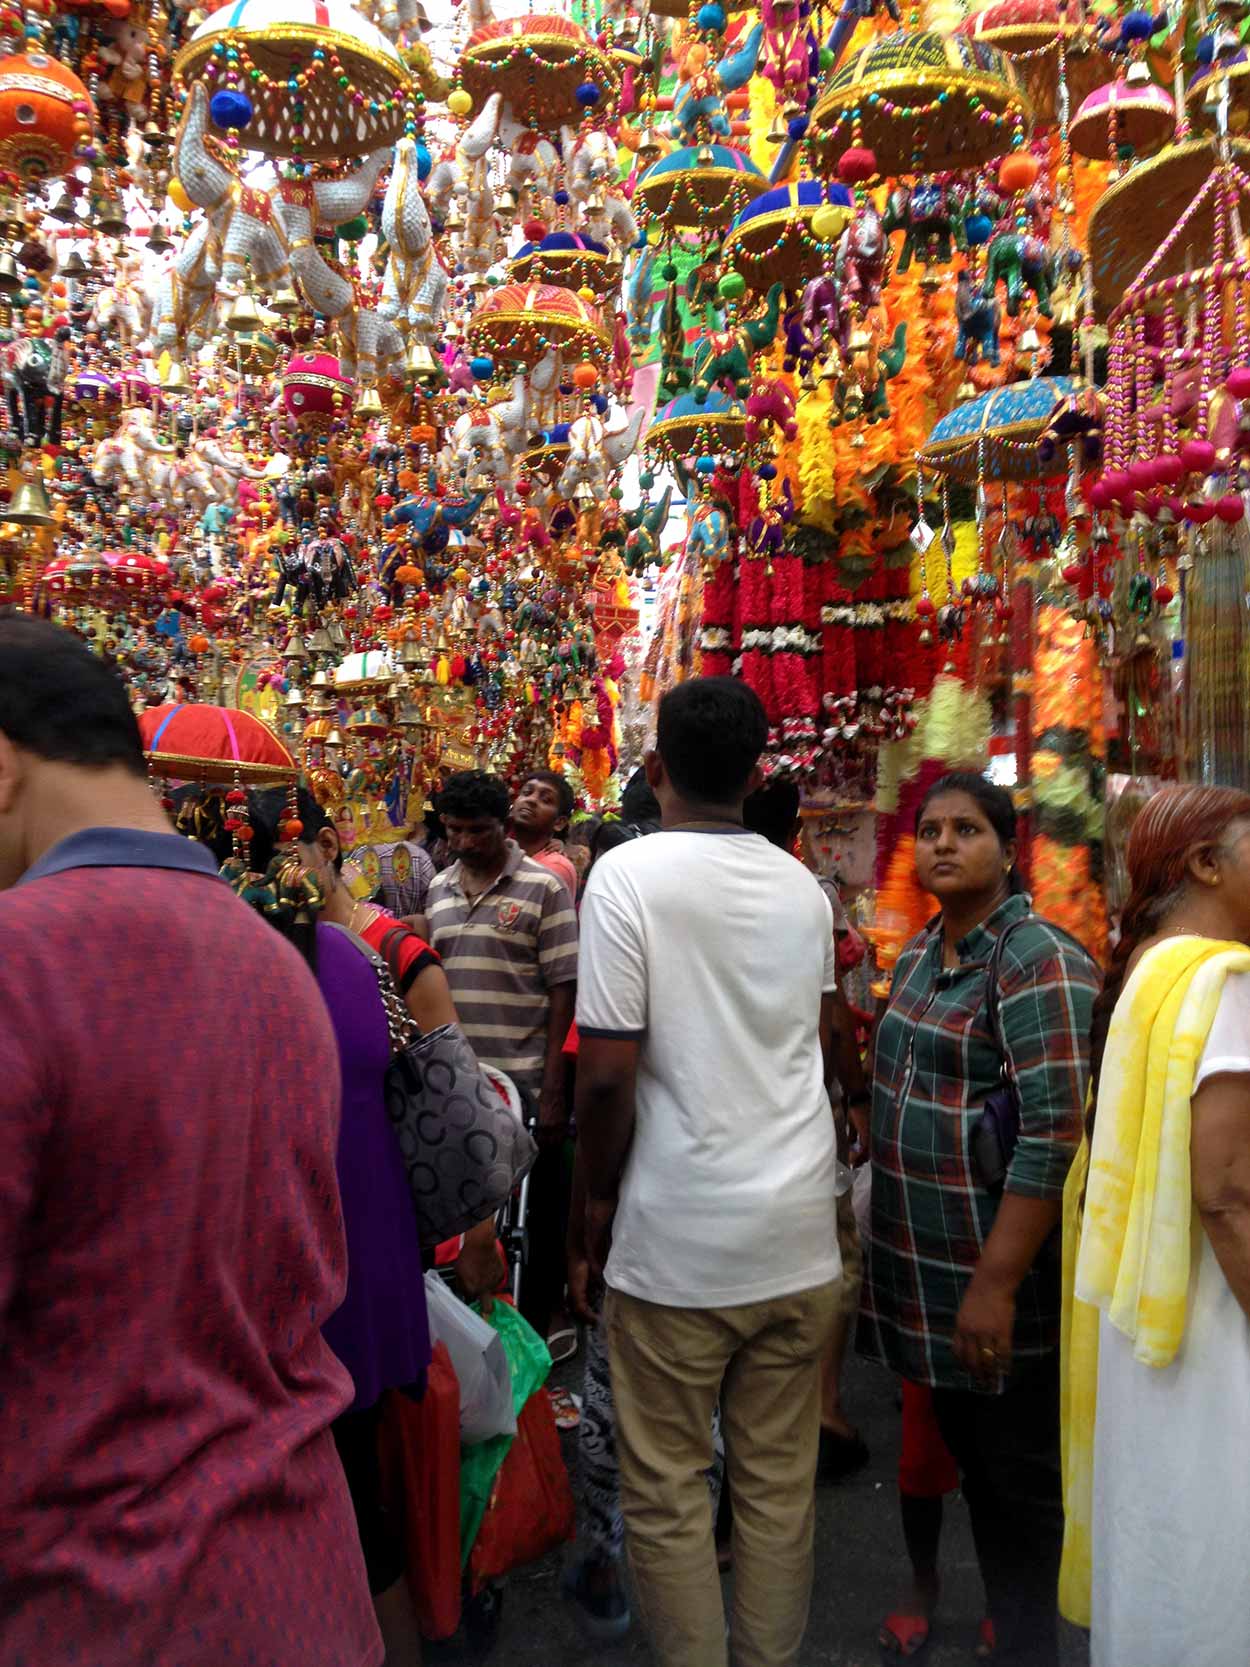 Market scene on Serangoon Road, Little India, Singapore